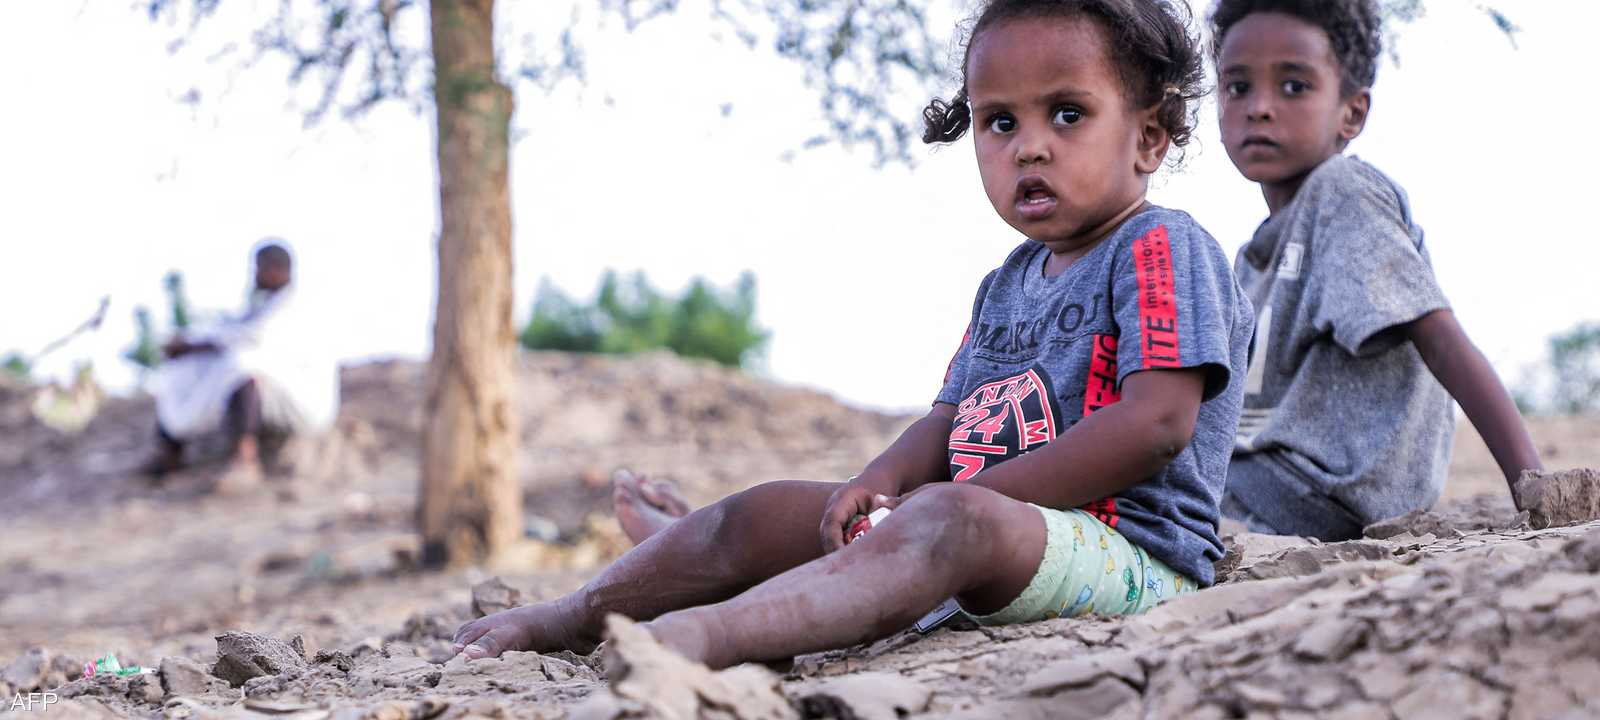 يونيسيف نبهت إلى مخاطر محدقة بأطفال السودان